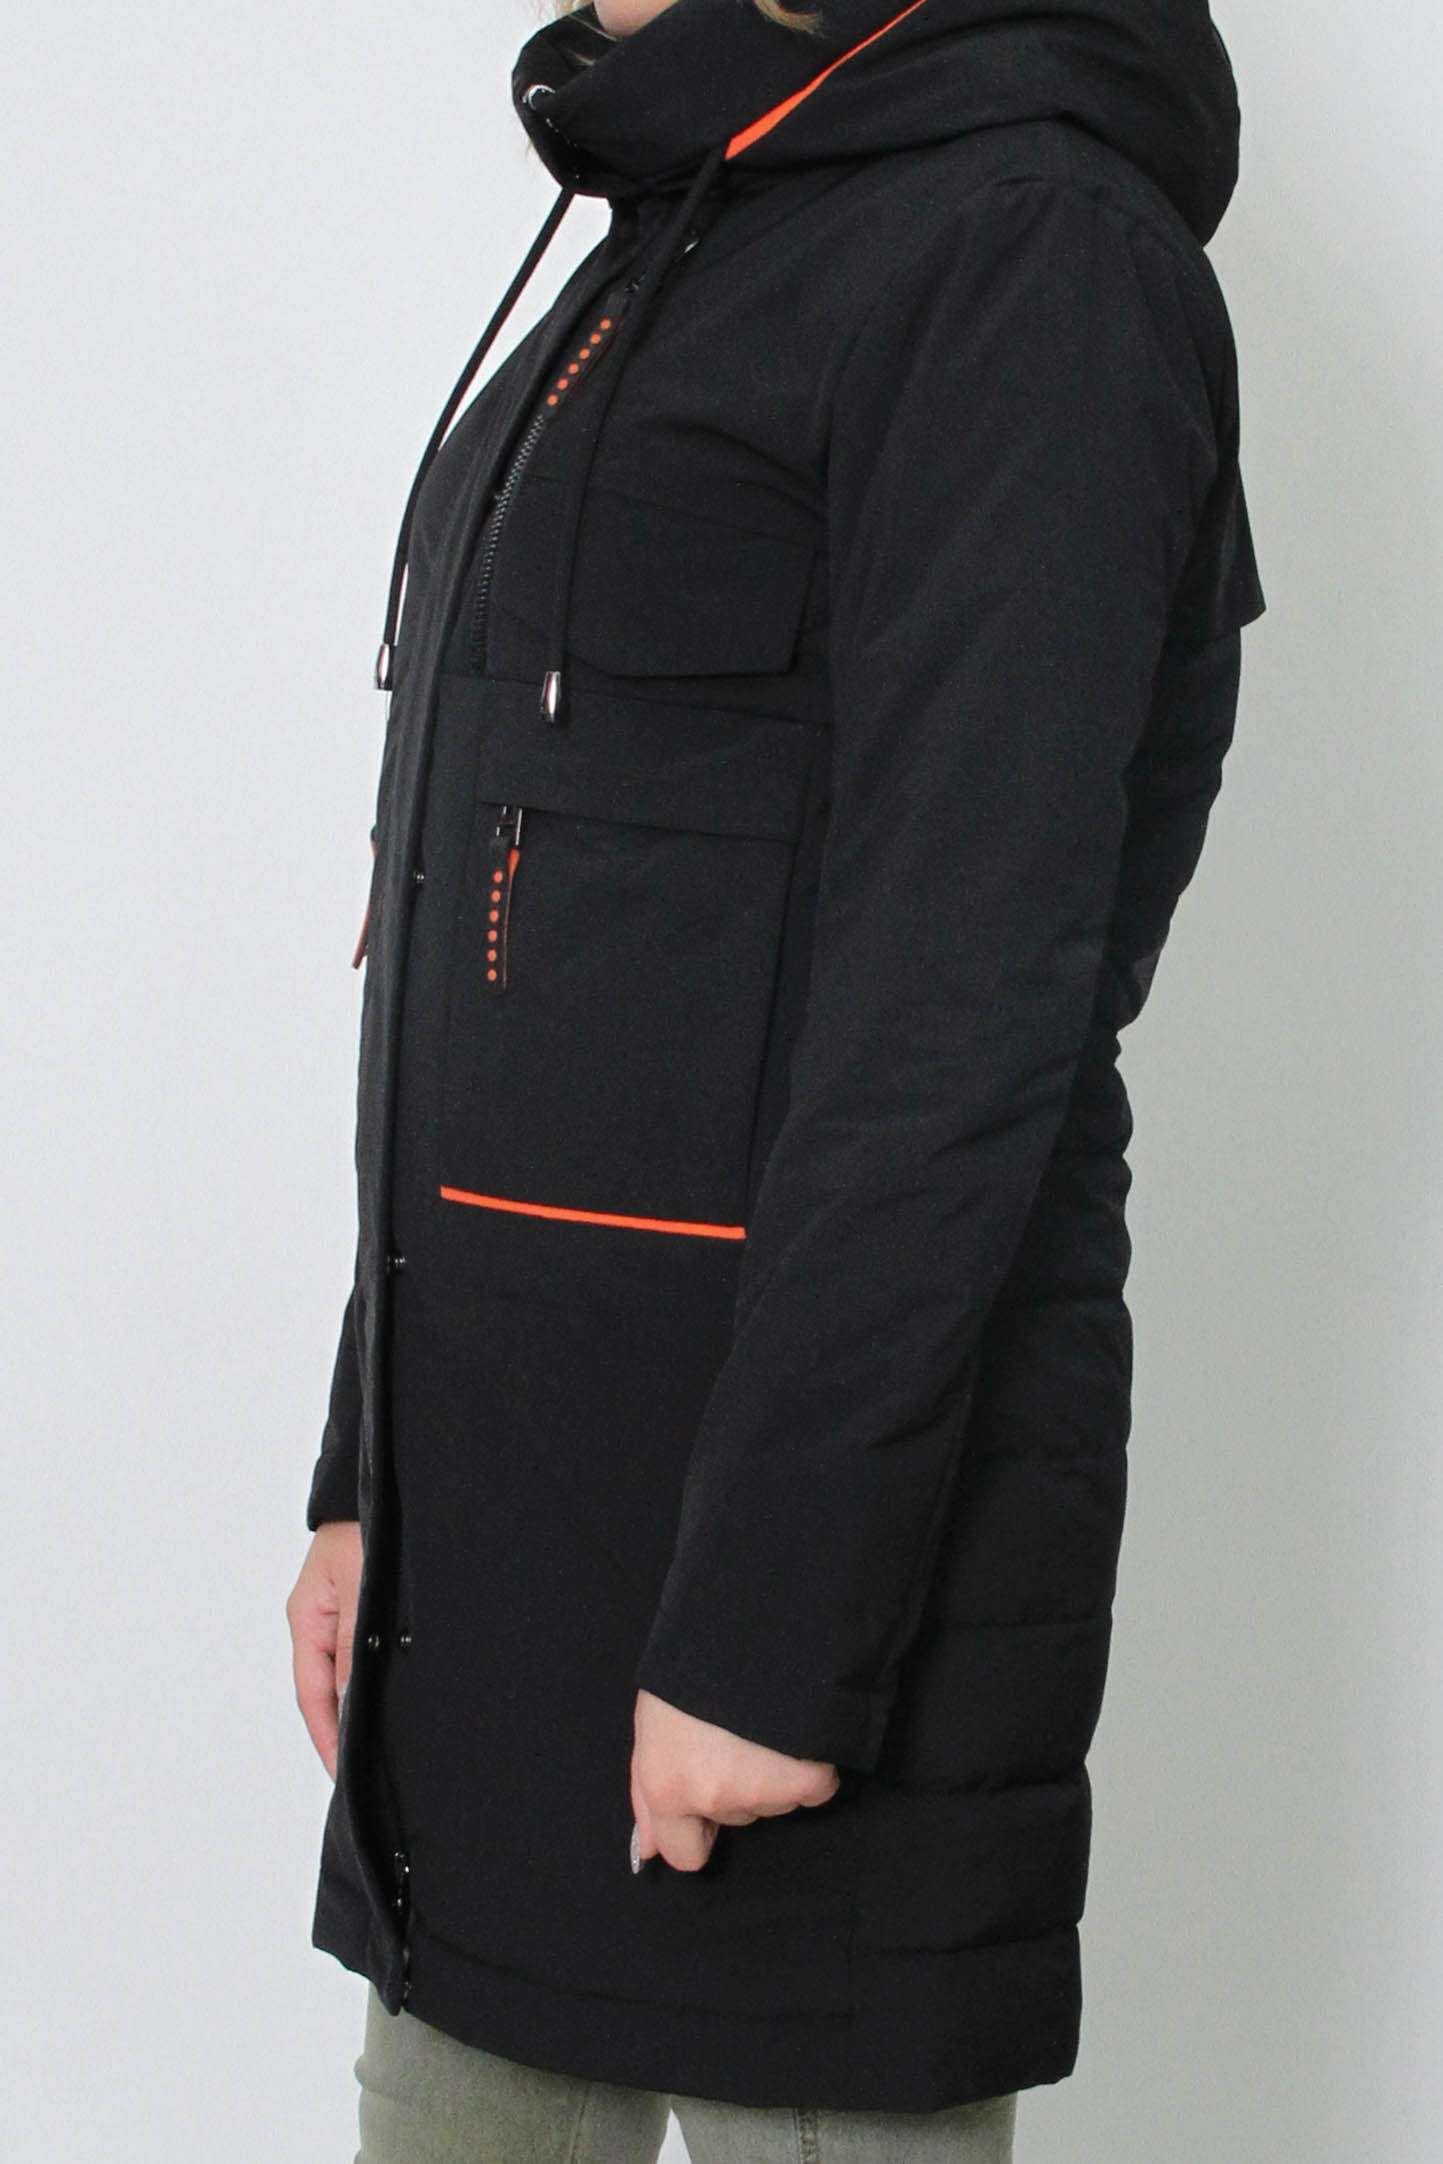 Женская демисезонная куртка (FineBabyCat)